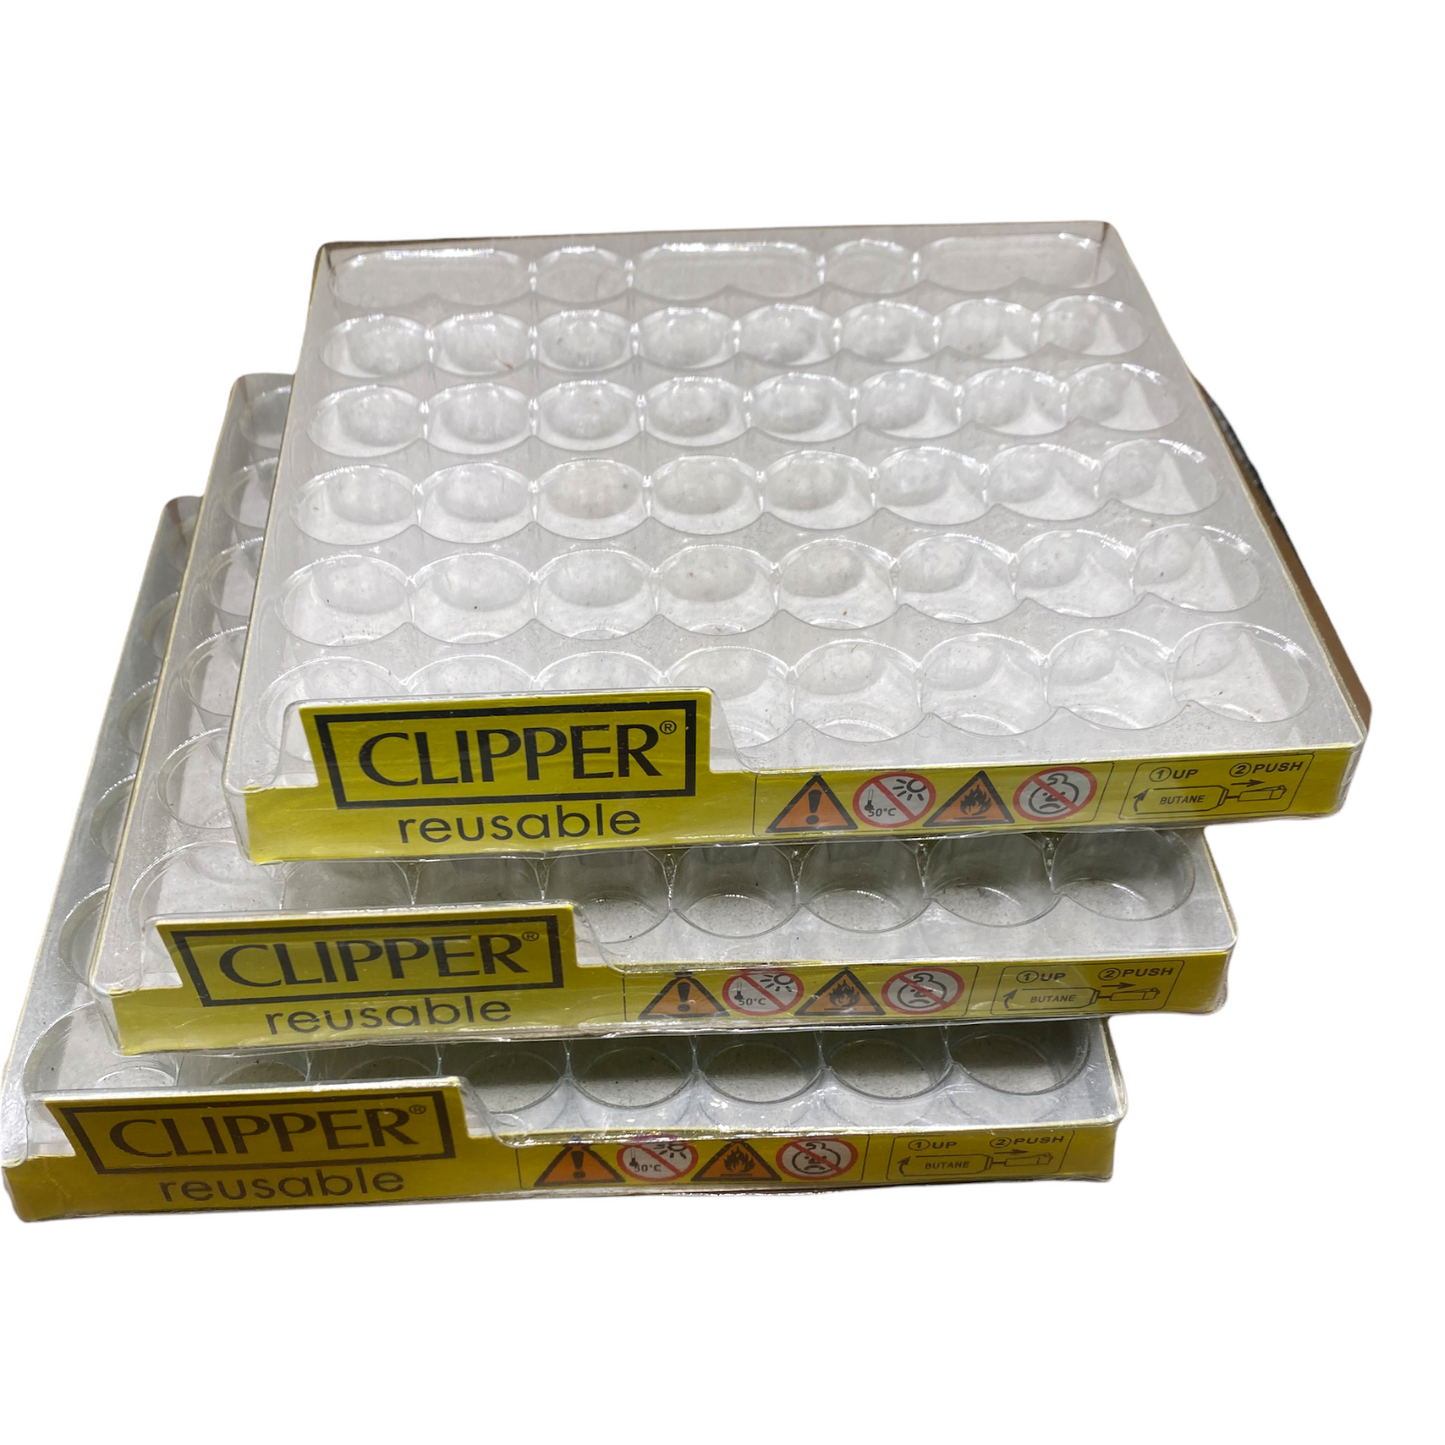 3 x Plastic Clipper tray